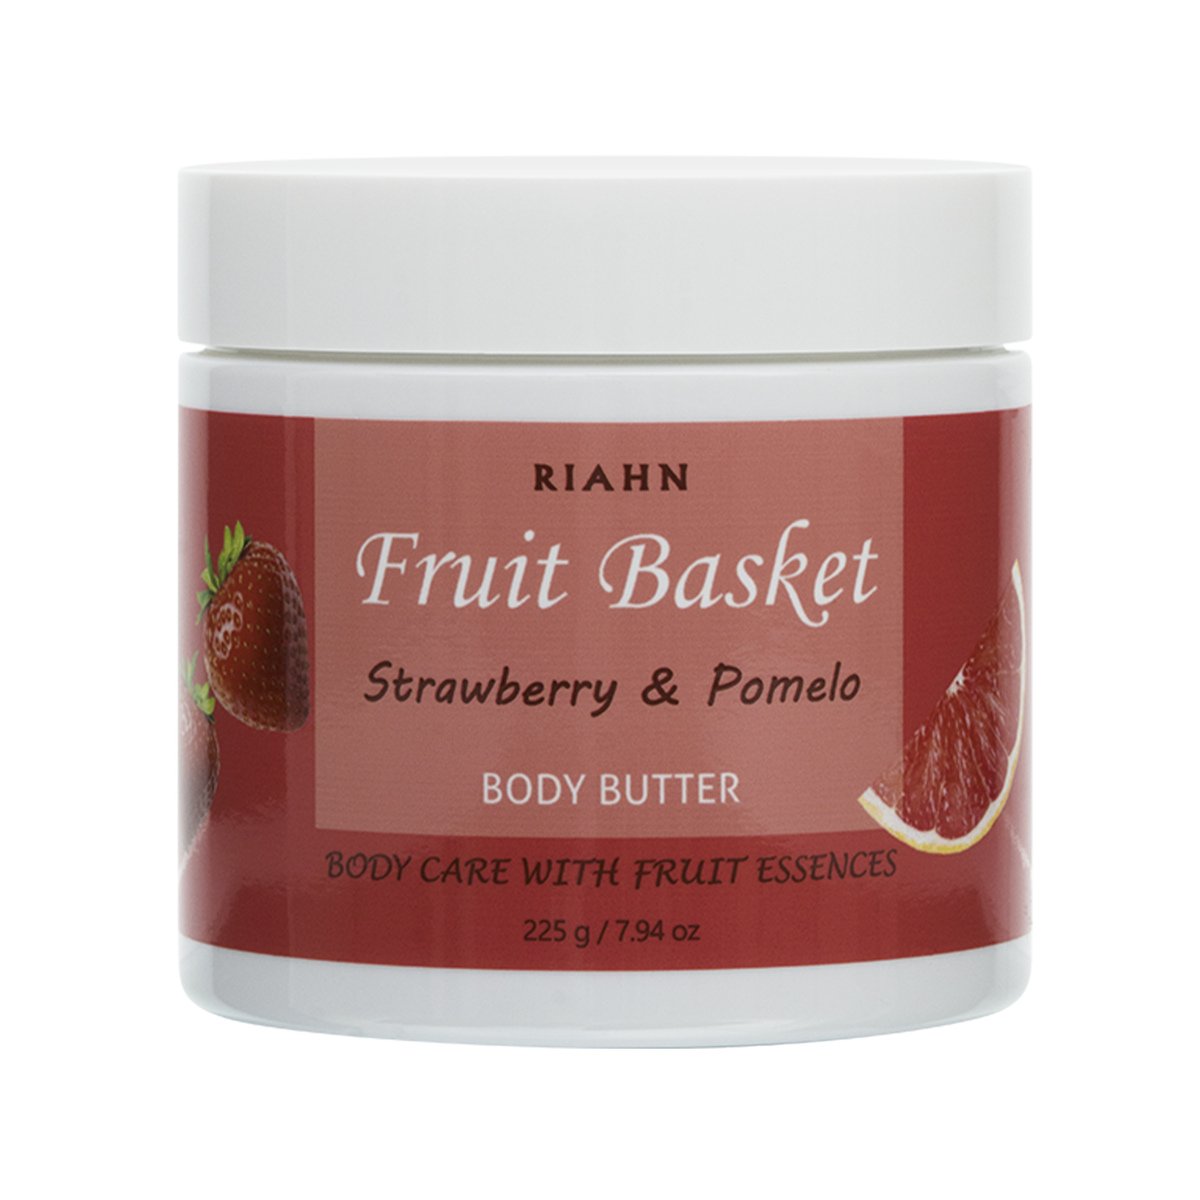 Riahn Fruit Basket Strawberry & Pomelo Body Butter Jar 225g